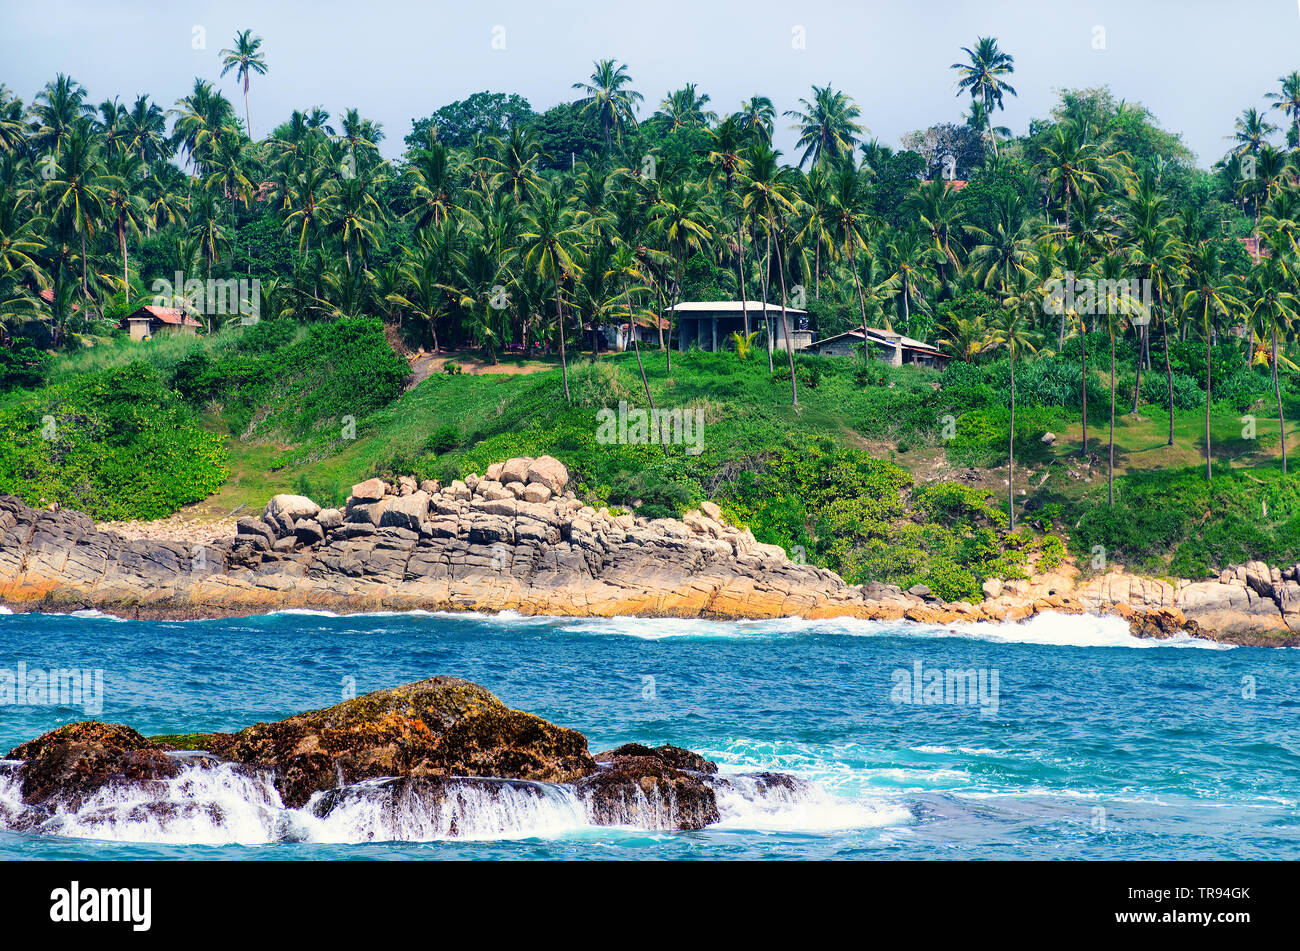 Schöne Aussicht vom Meer an Land auf eine tropische Insel mit Palmen und ein Haus. Einsamer Ort inmitten der Natur. Stockfoto